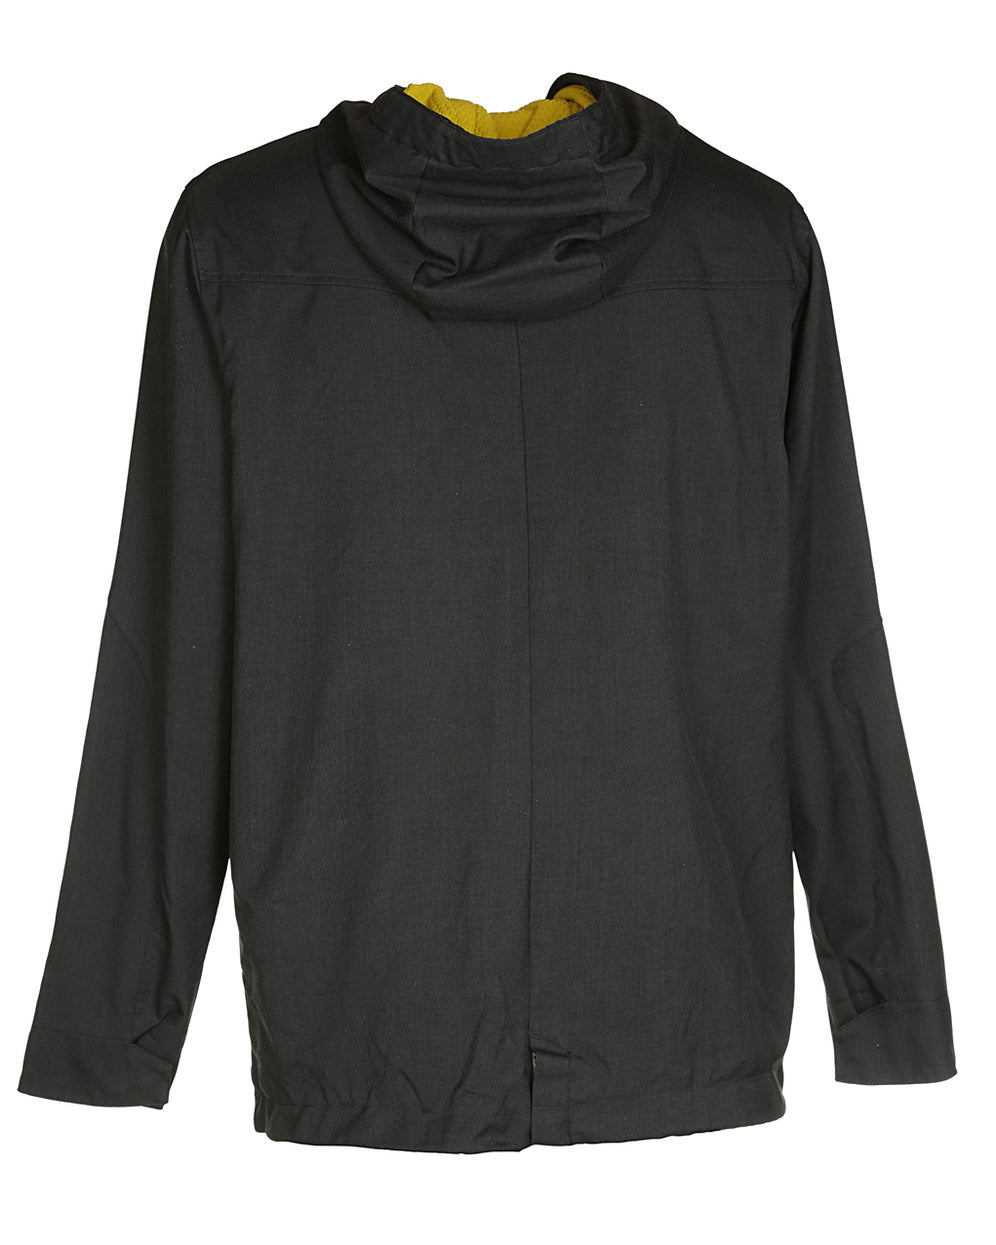 Adidas Black Hooded Jacket - L